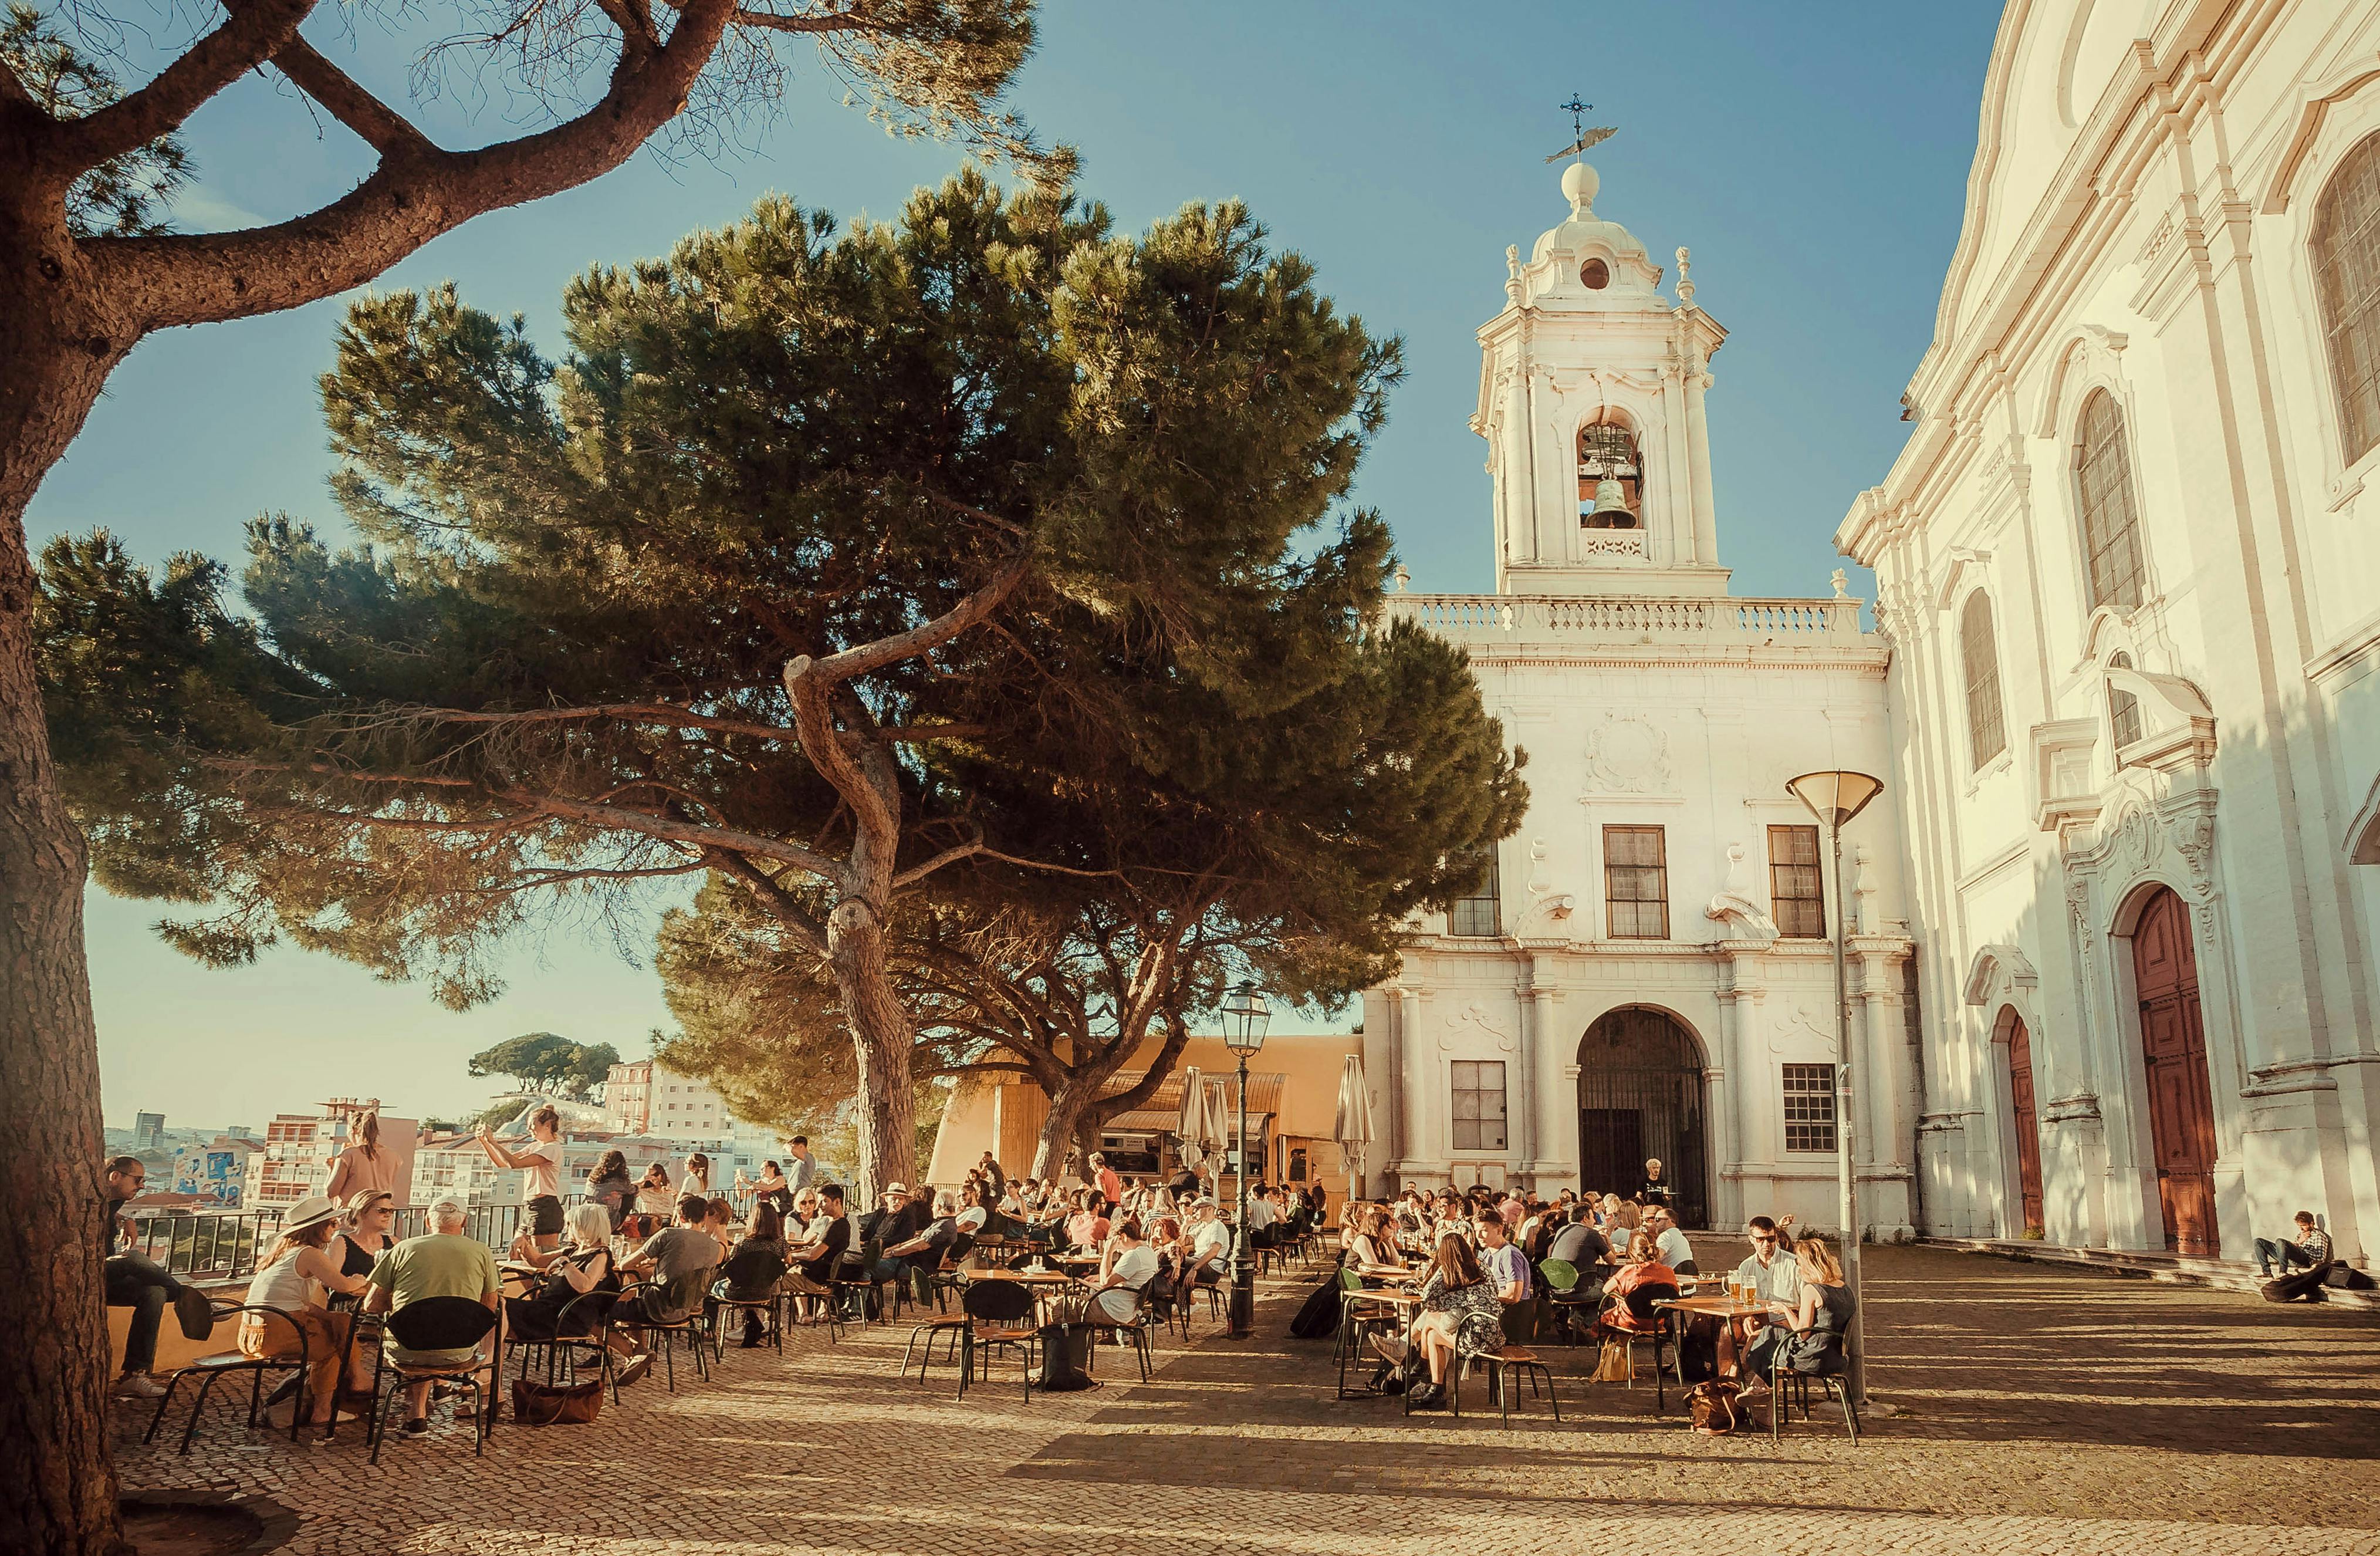 Lissabon ist eine Stadt voller altem Charme und lebendiger Räume